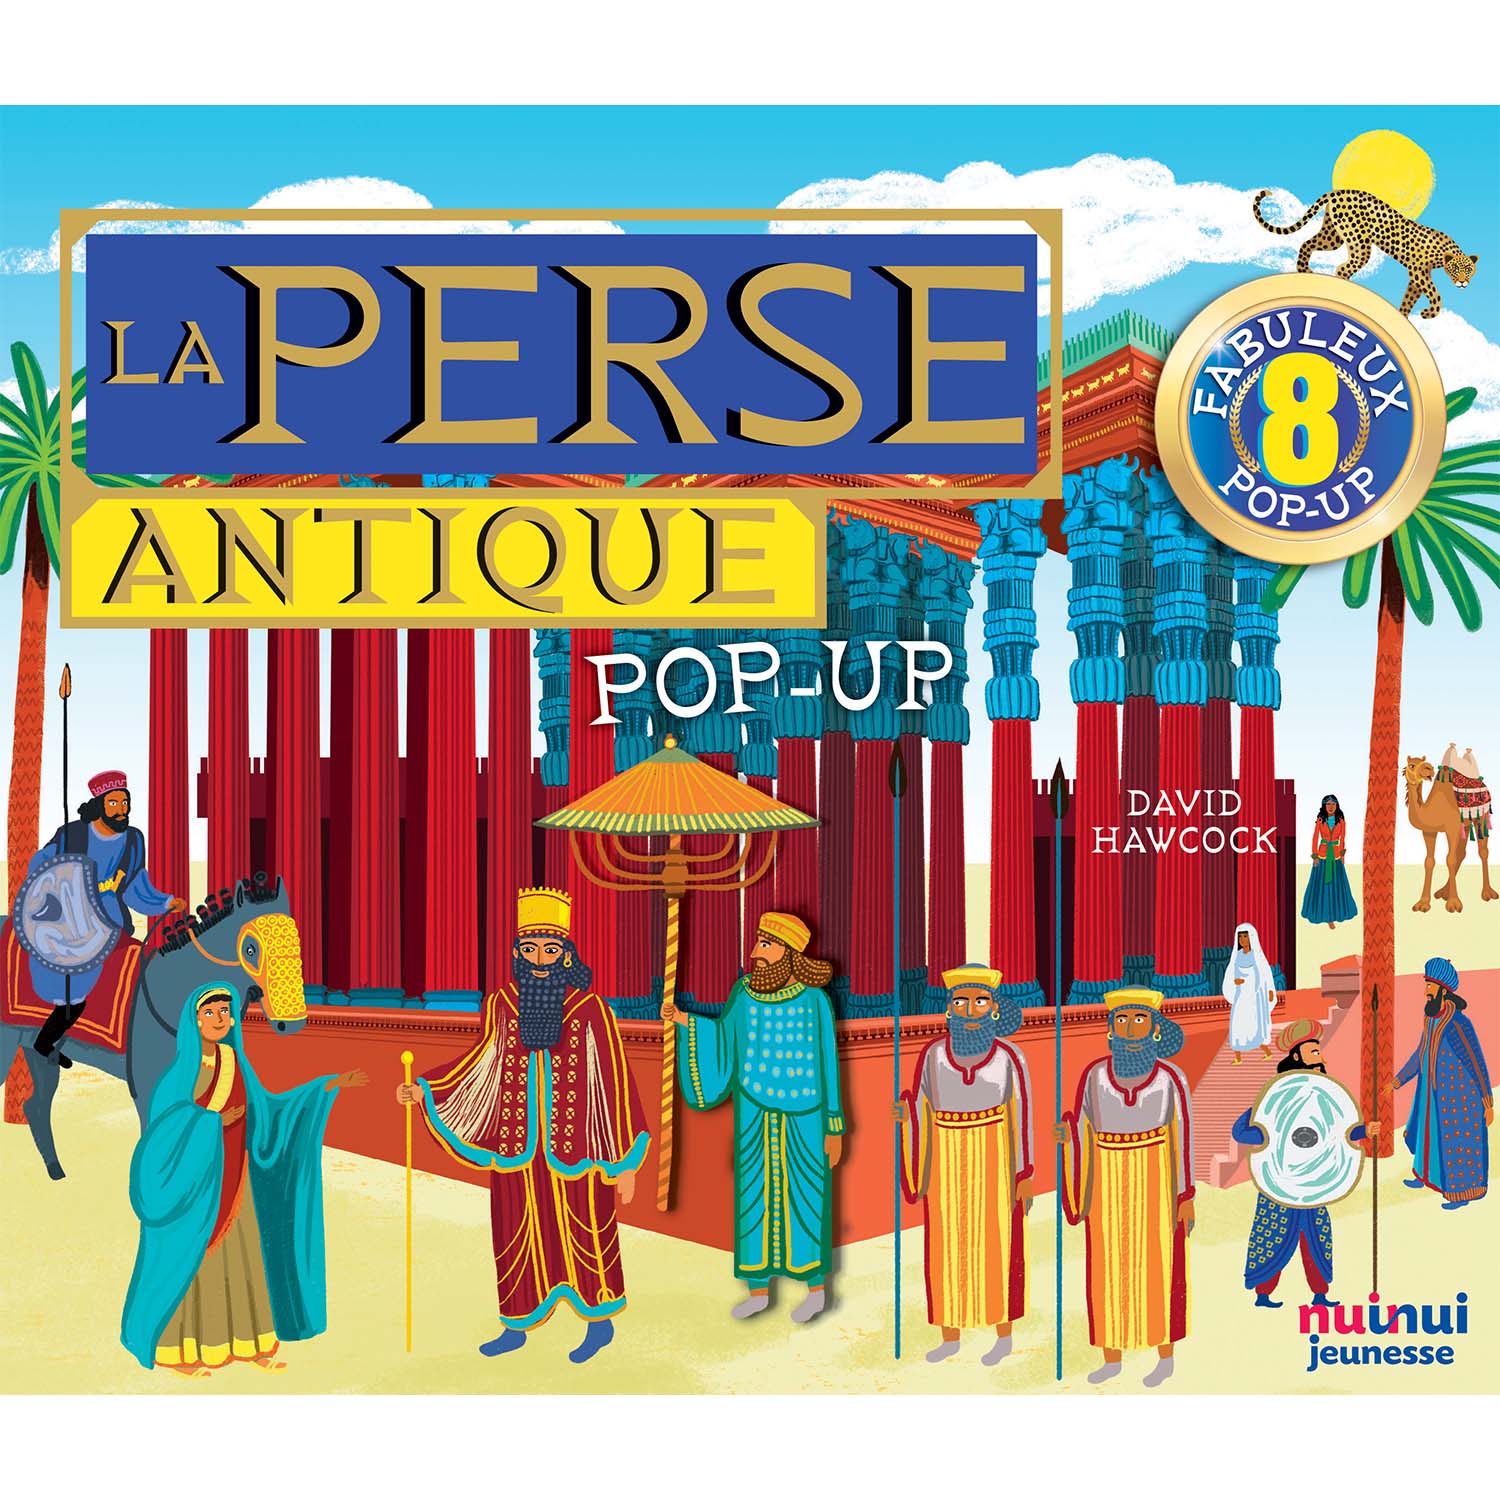 Pop-up historique - La Perse antique